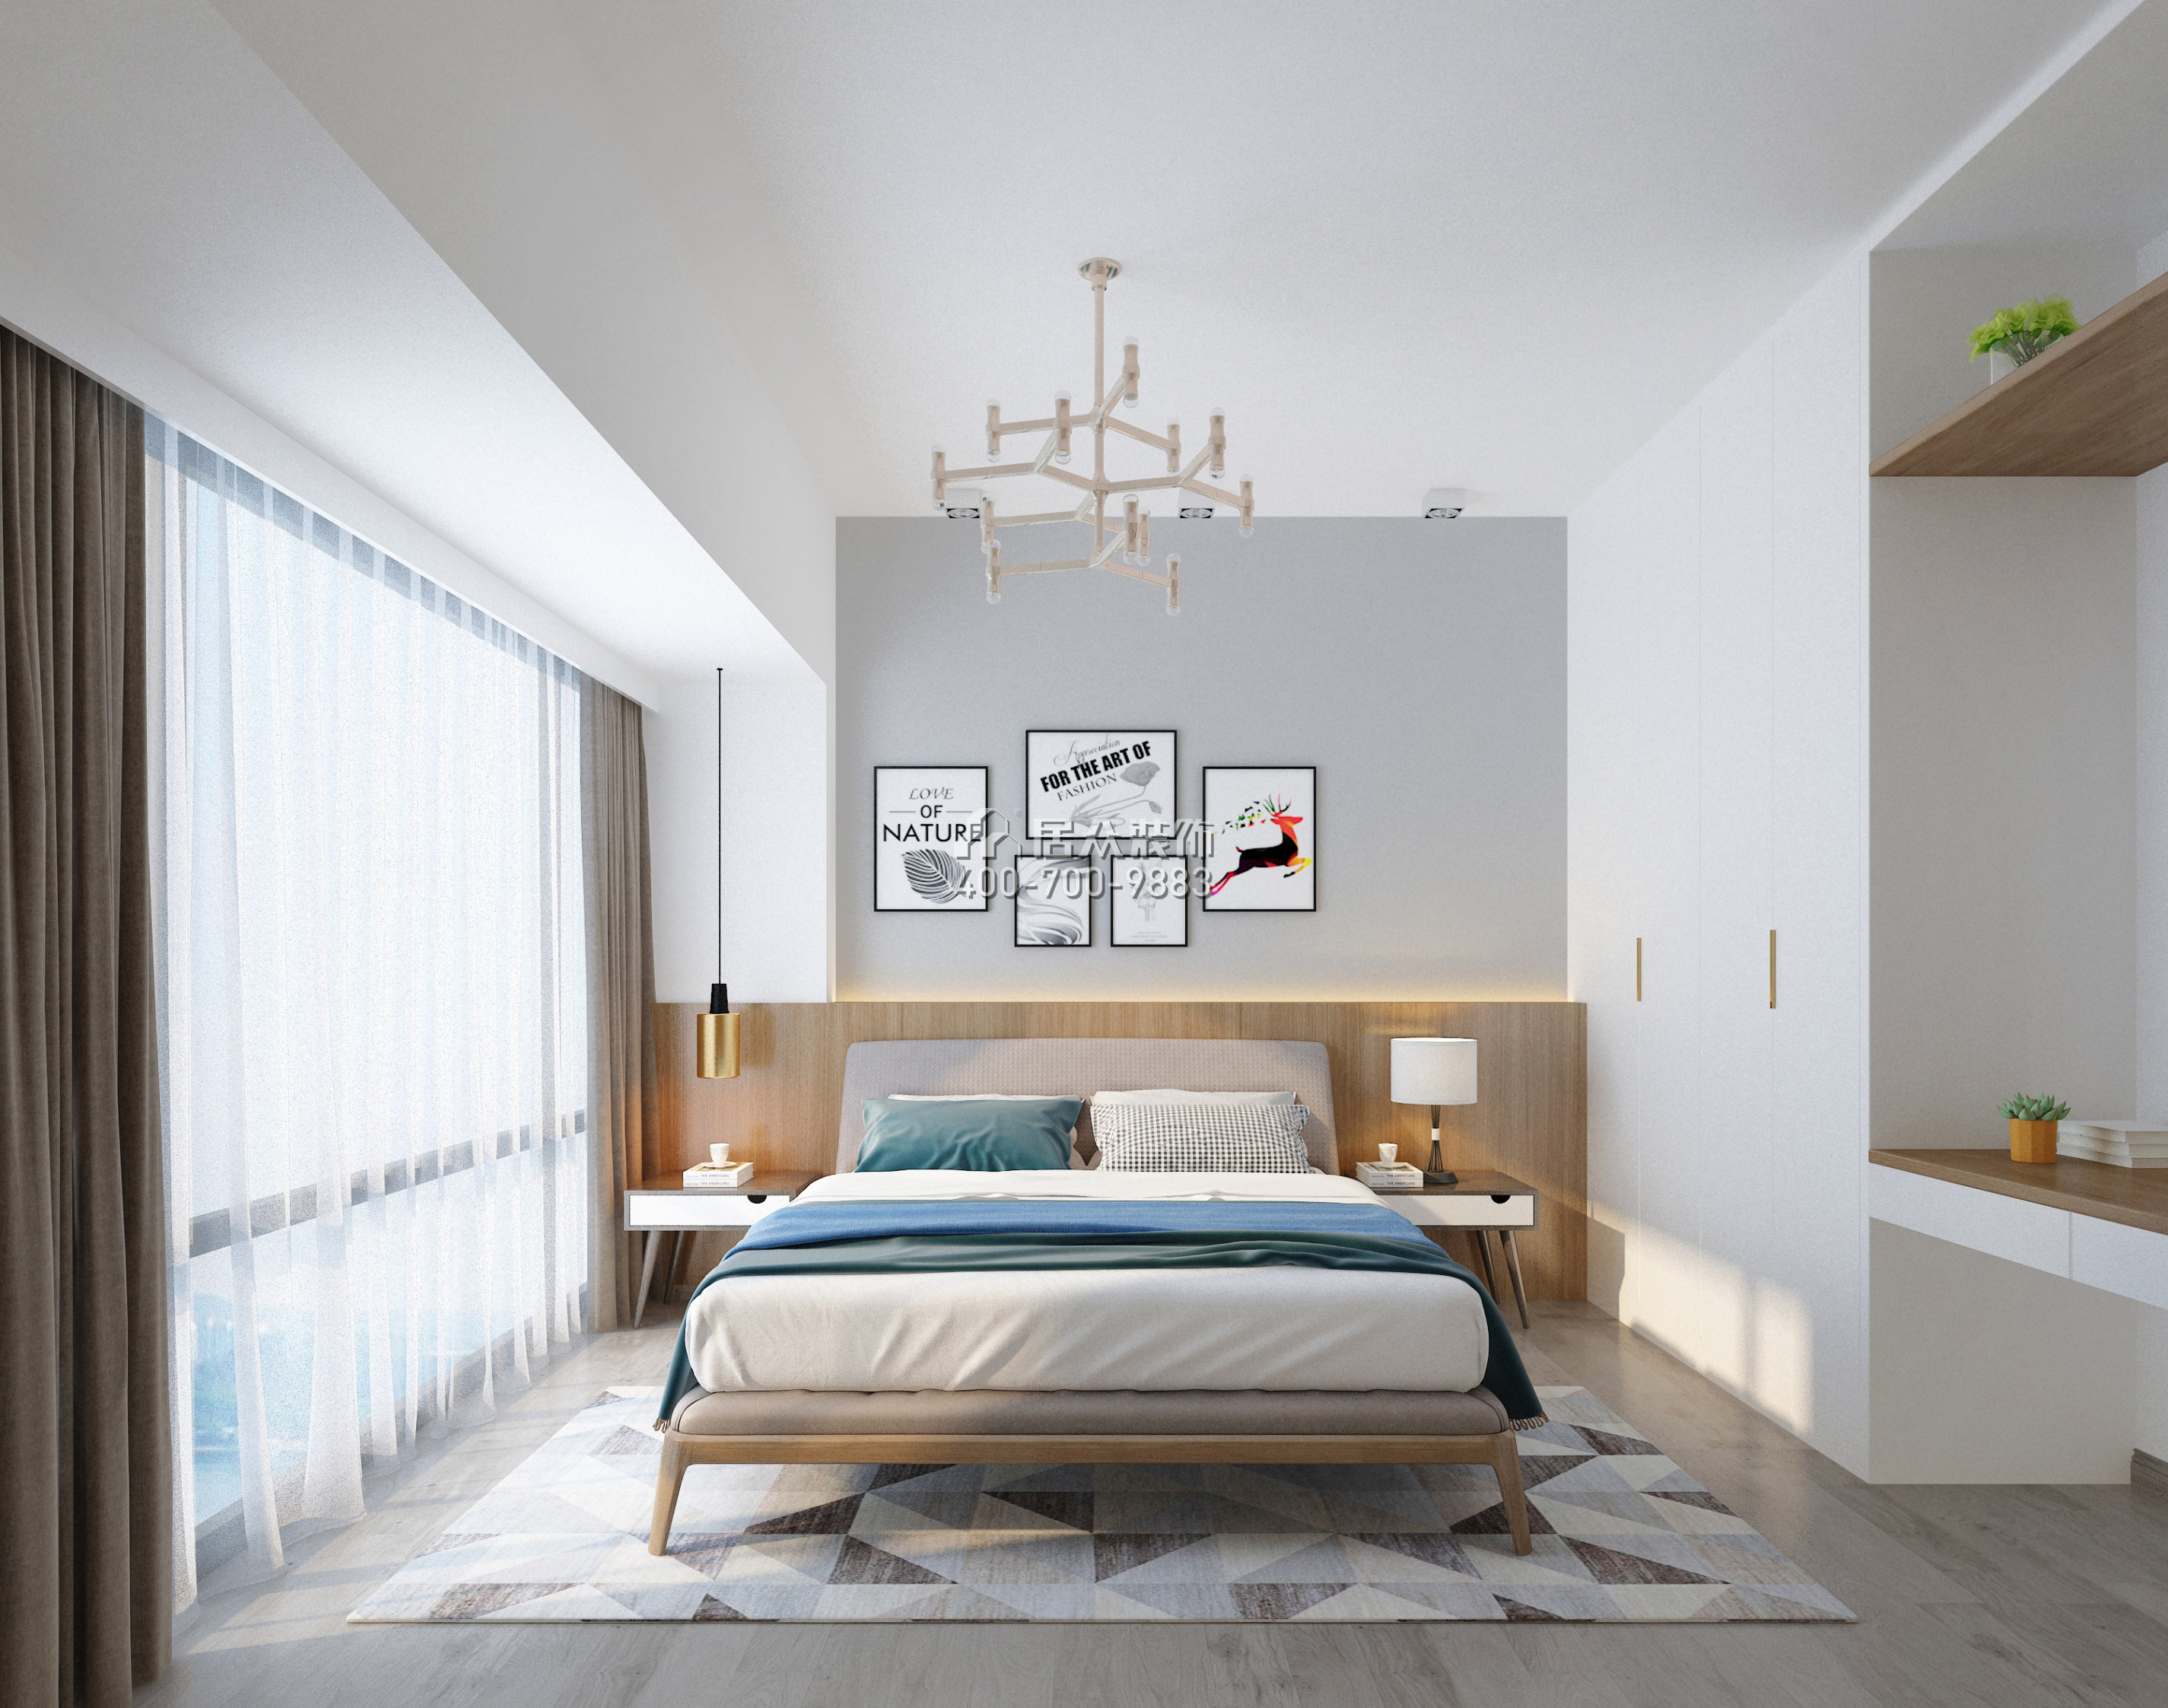 平吉上苑二期98平方米现代简约风格平层户型卧室装修效果图